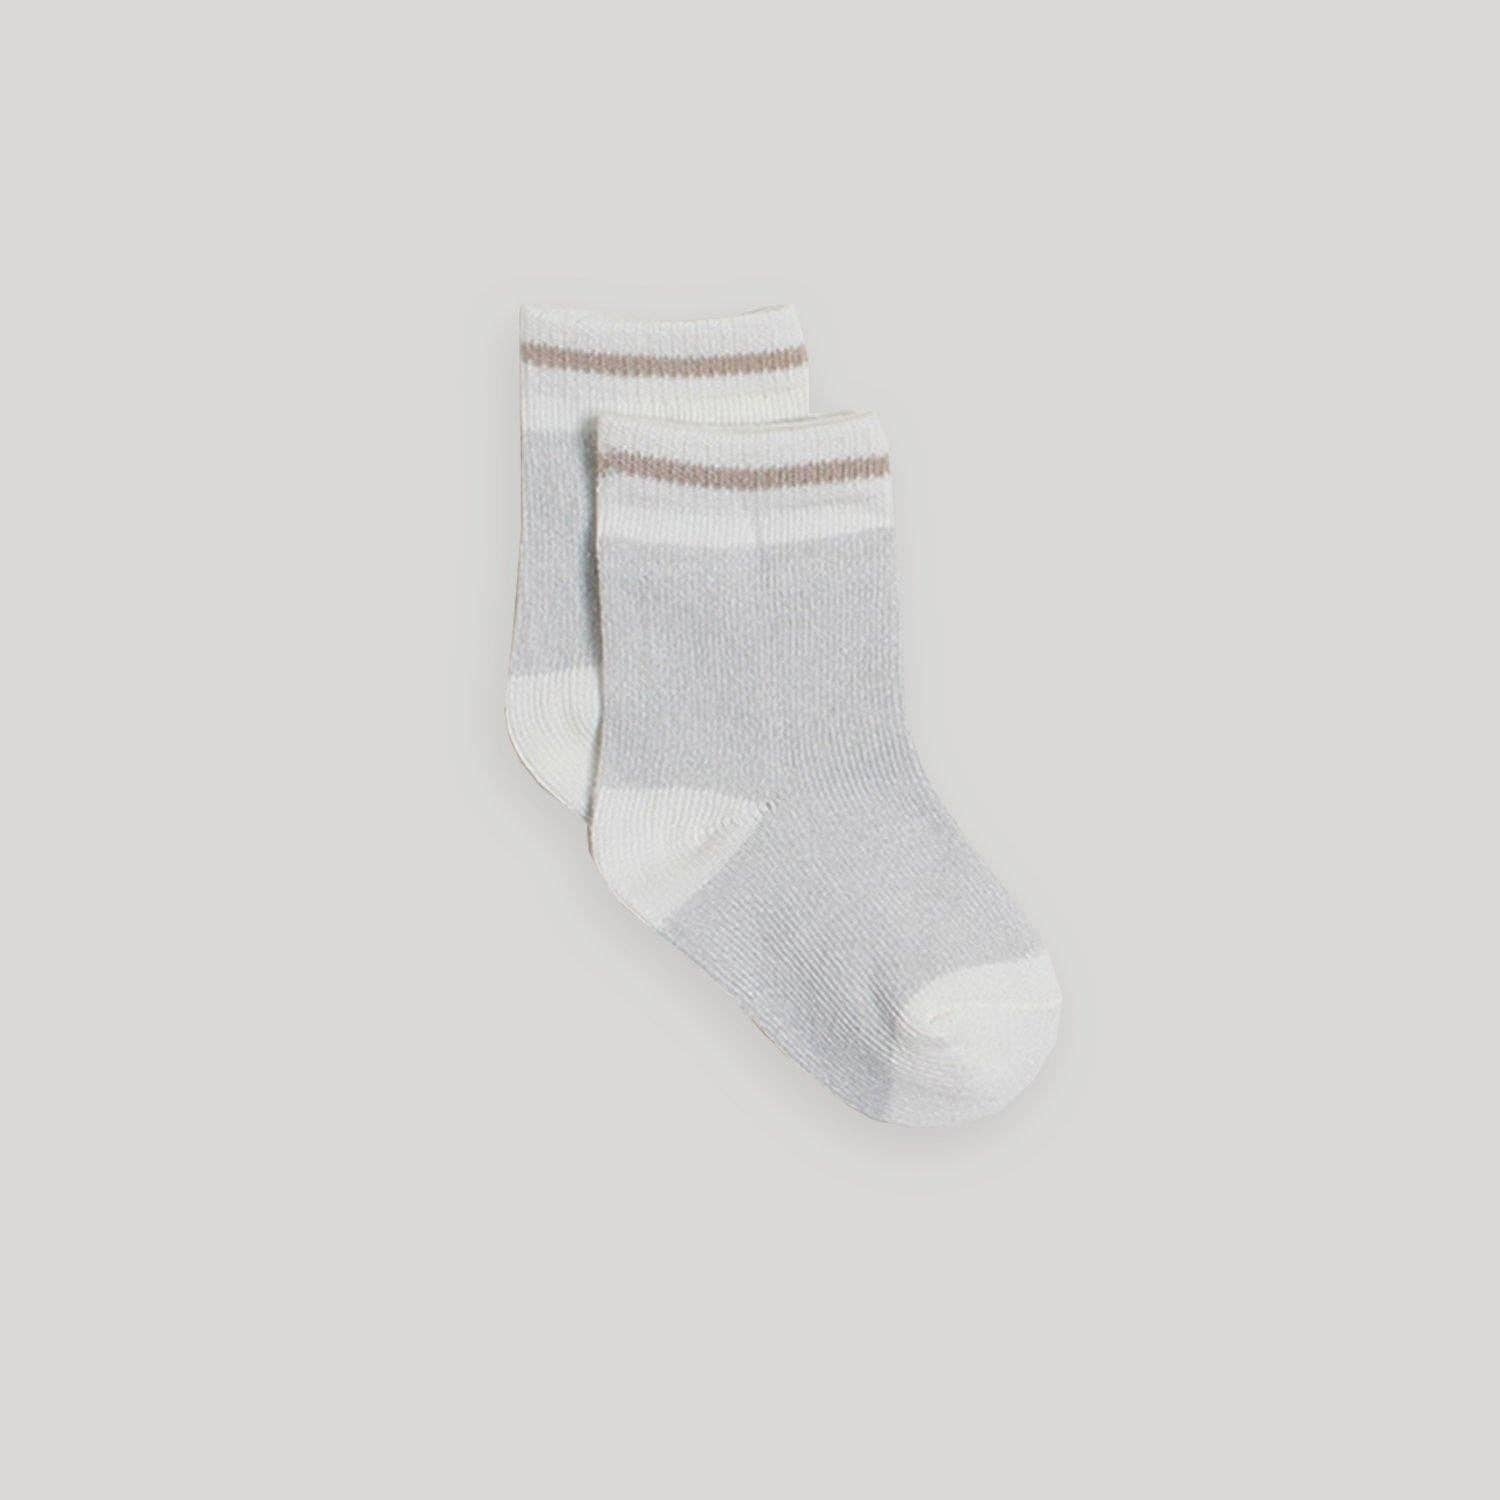 Infant Boot Socks- 2pk (beige/grey)